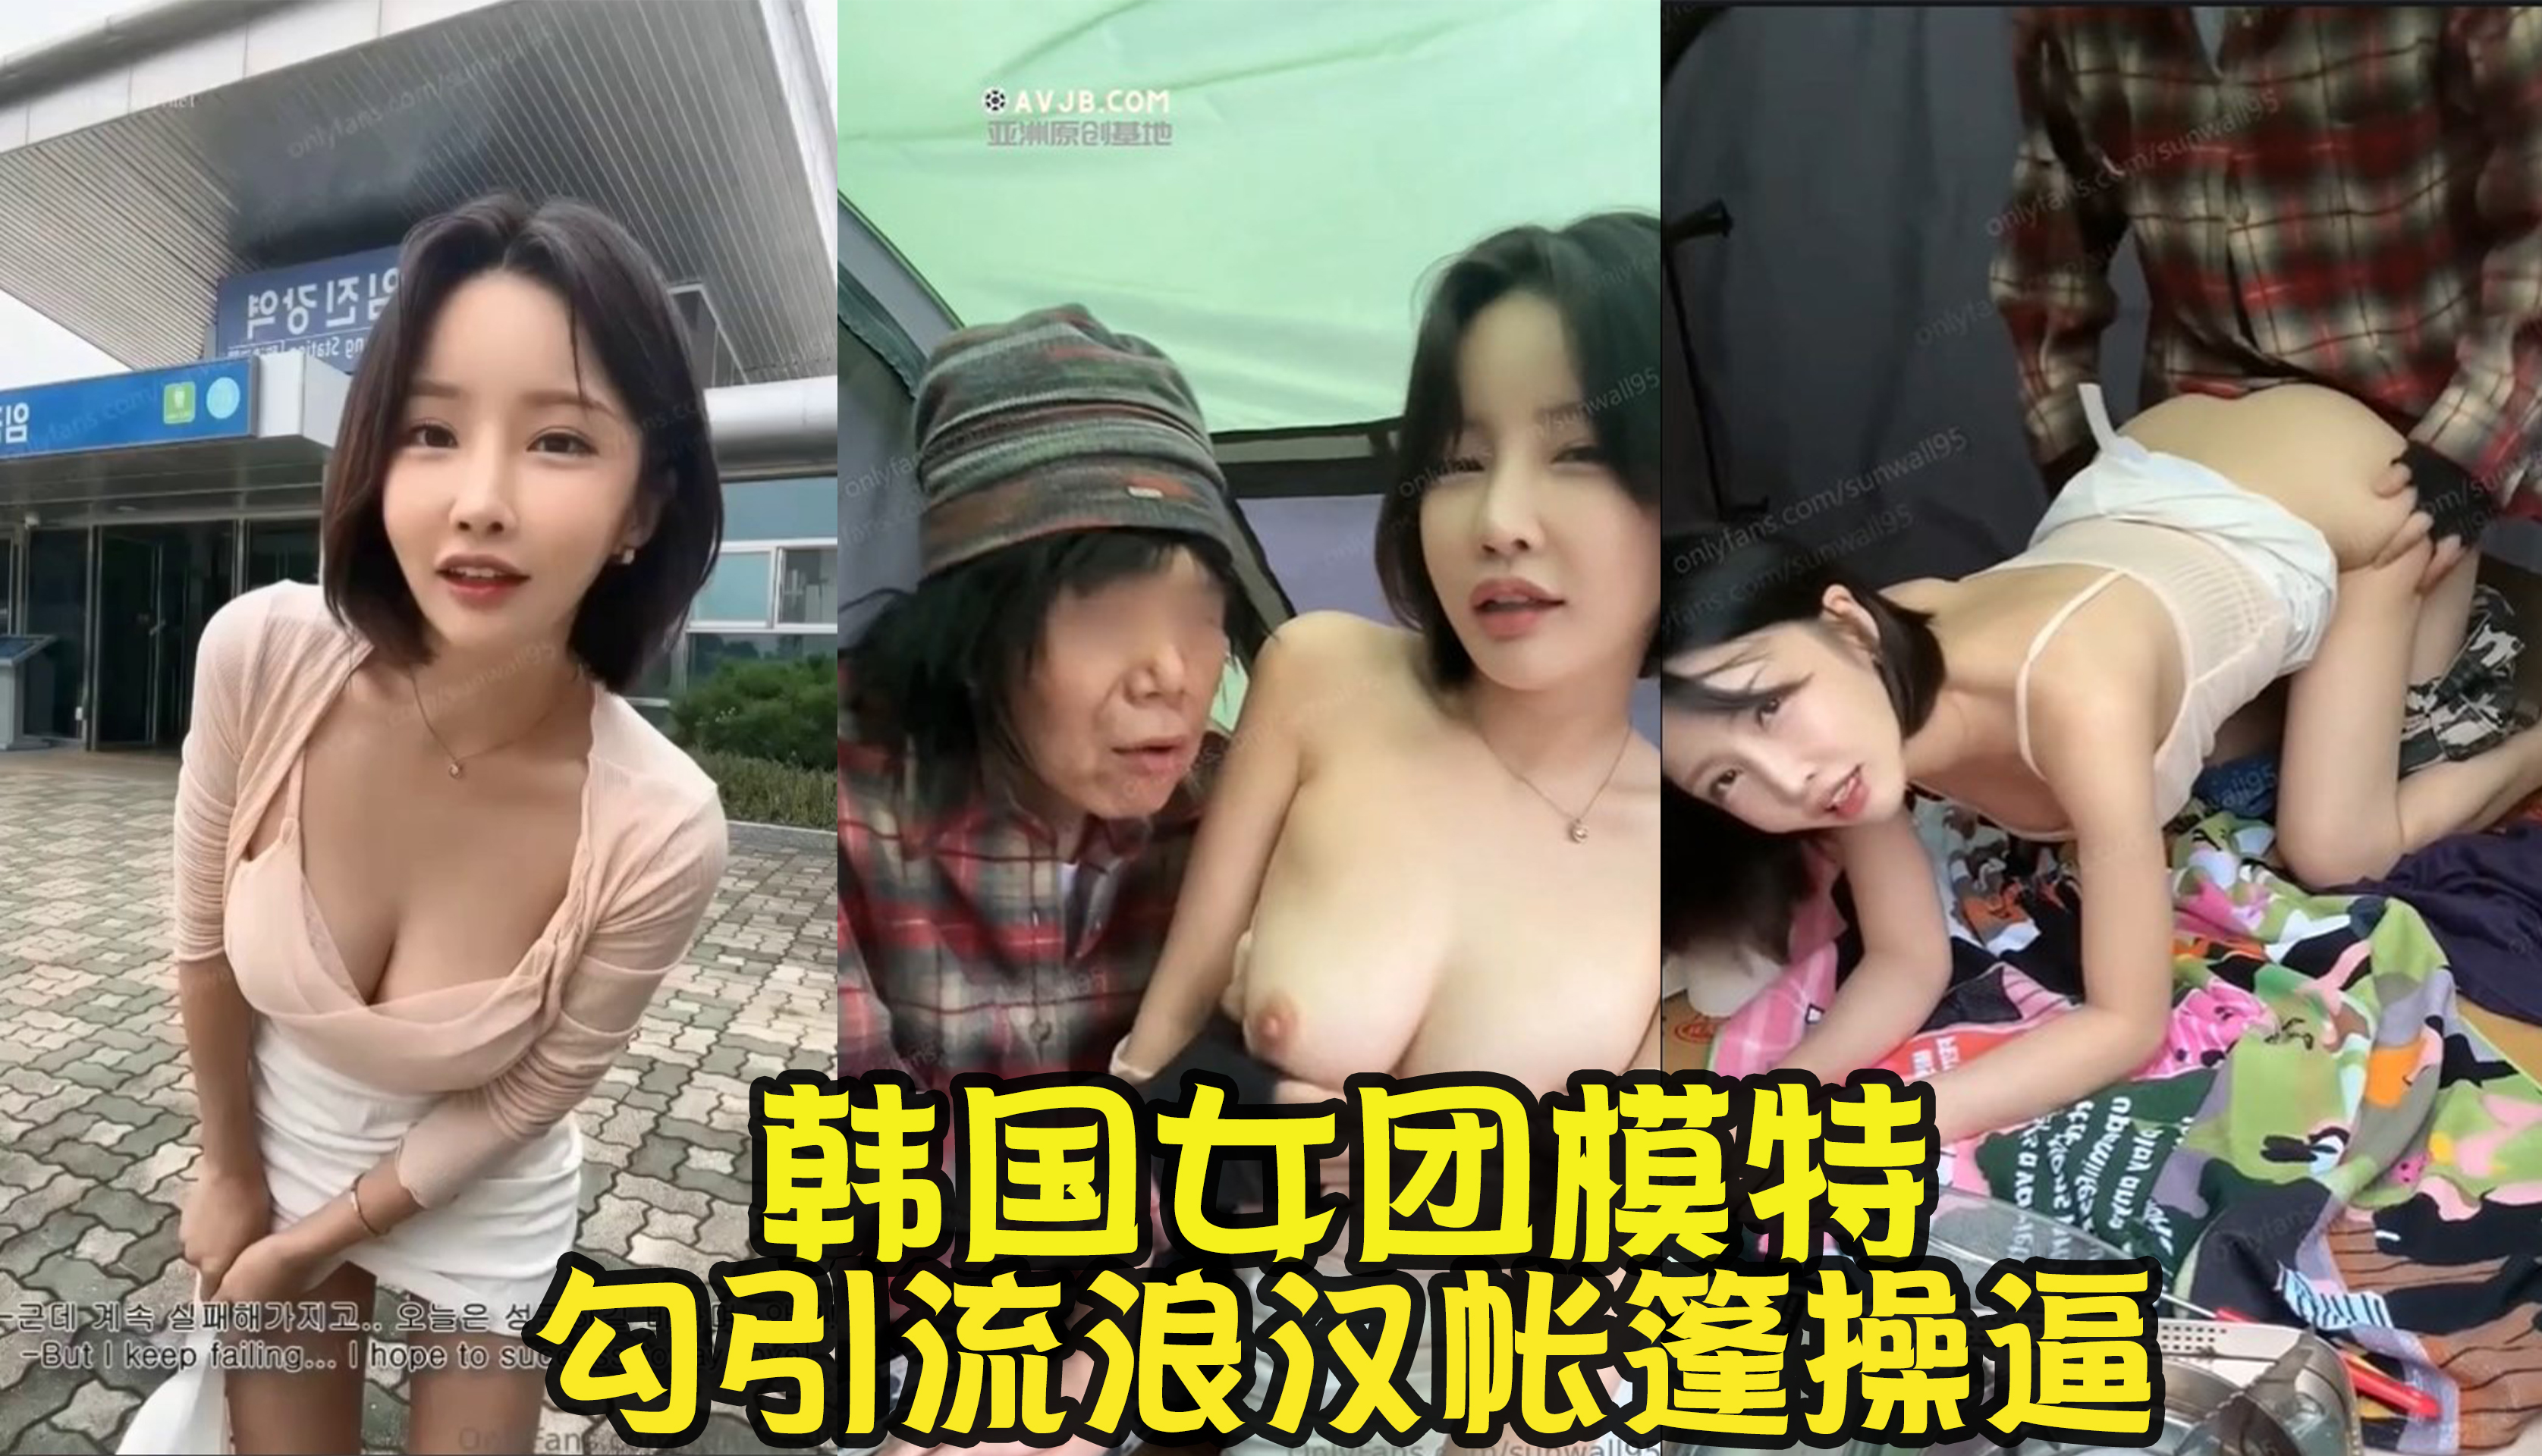 Korean ex-girl group member model [sunwall95] latest, homeless and homeless man fucking